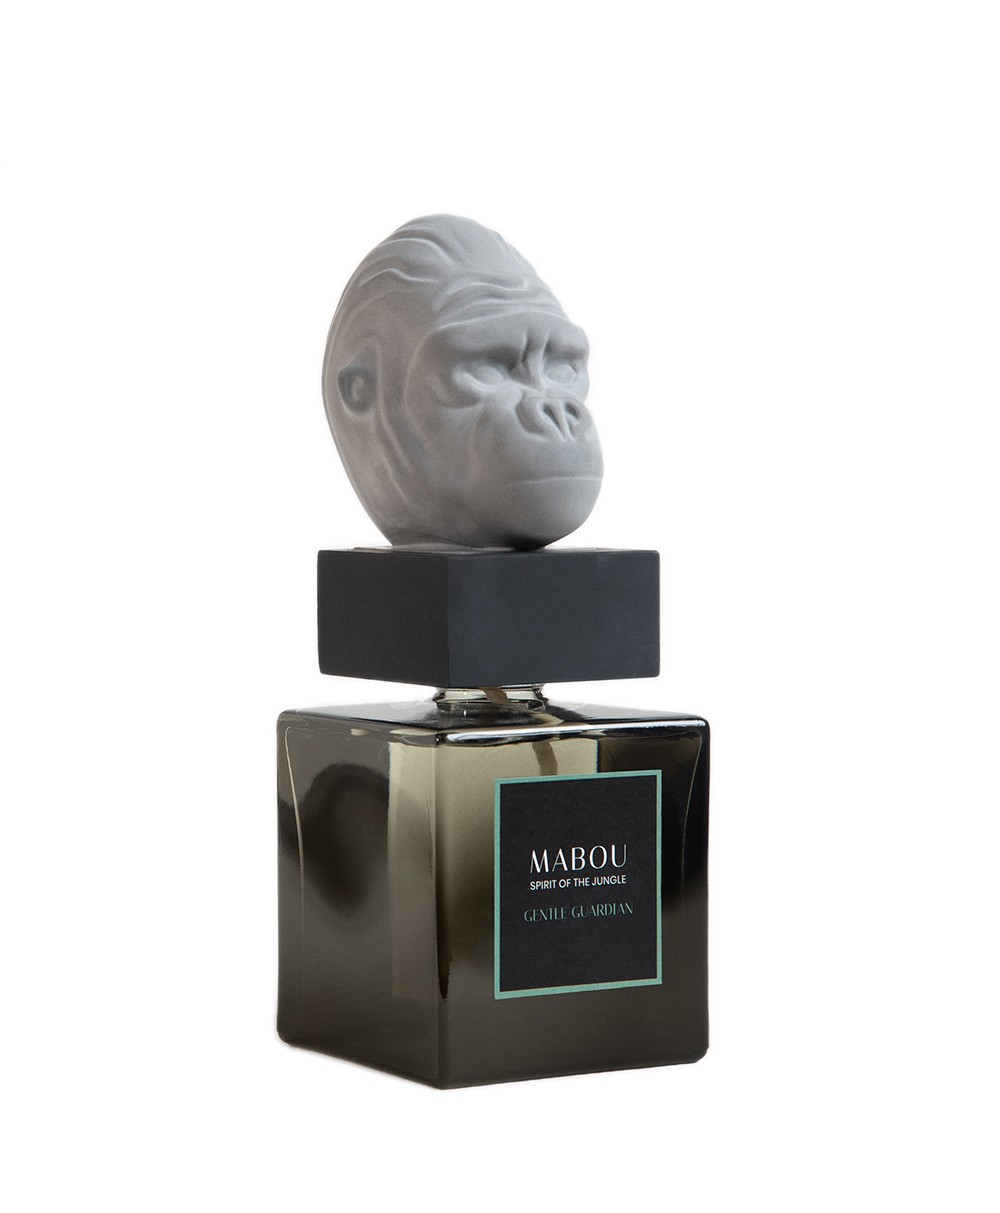 Produktbild der Duftskulptur Gorilla Gentle Giant von Mabou – im RAUM concept store